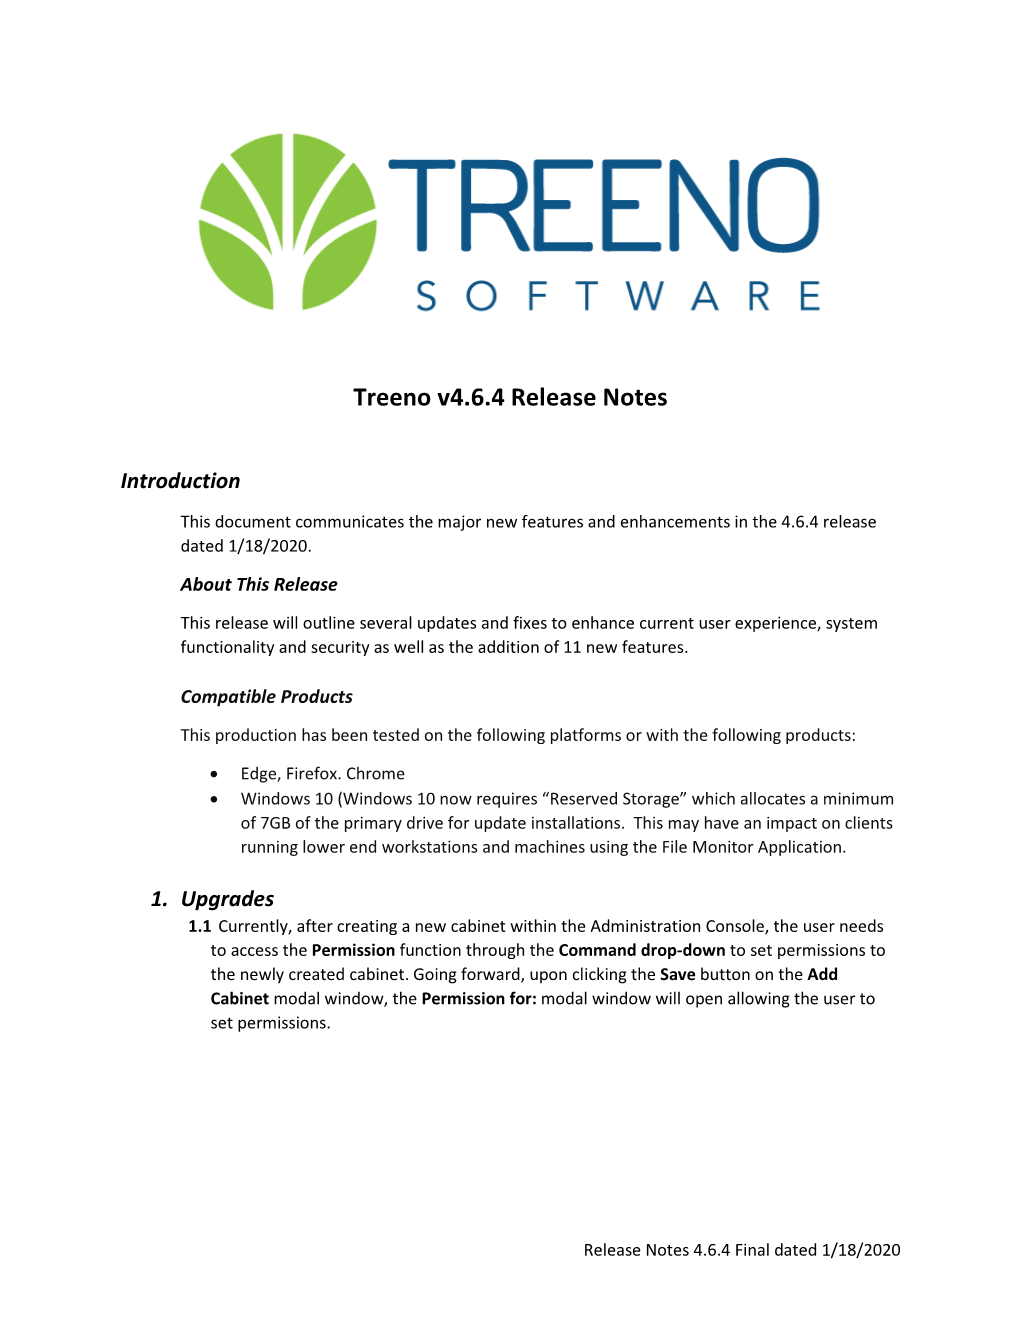 Treeno V4.6.4 Release Notes